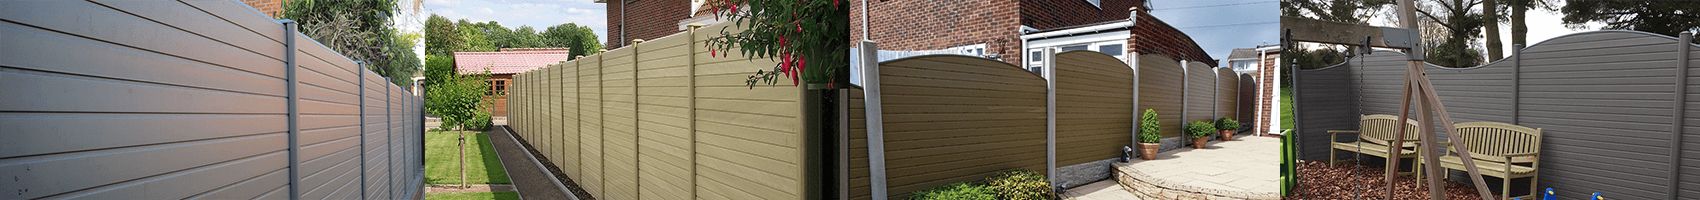 110mm x 90mm PVC Composite Fence Post Graphite 2.7m